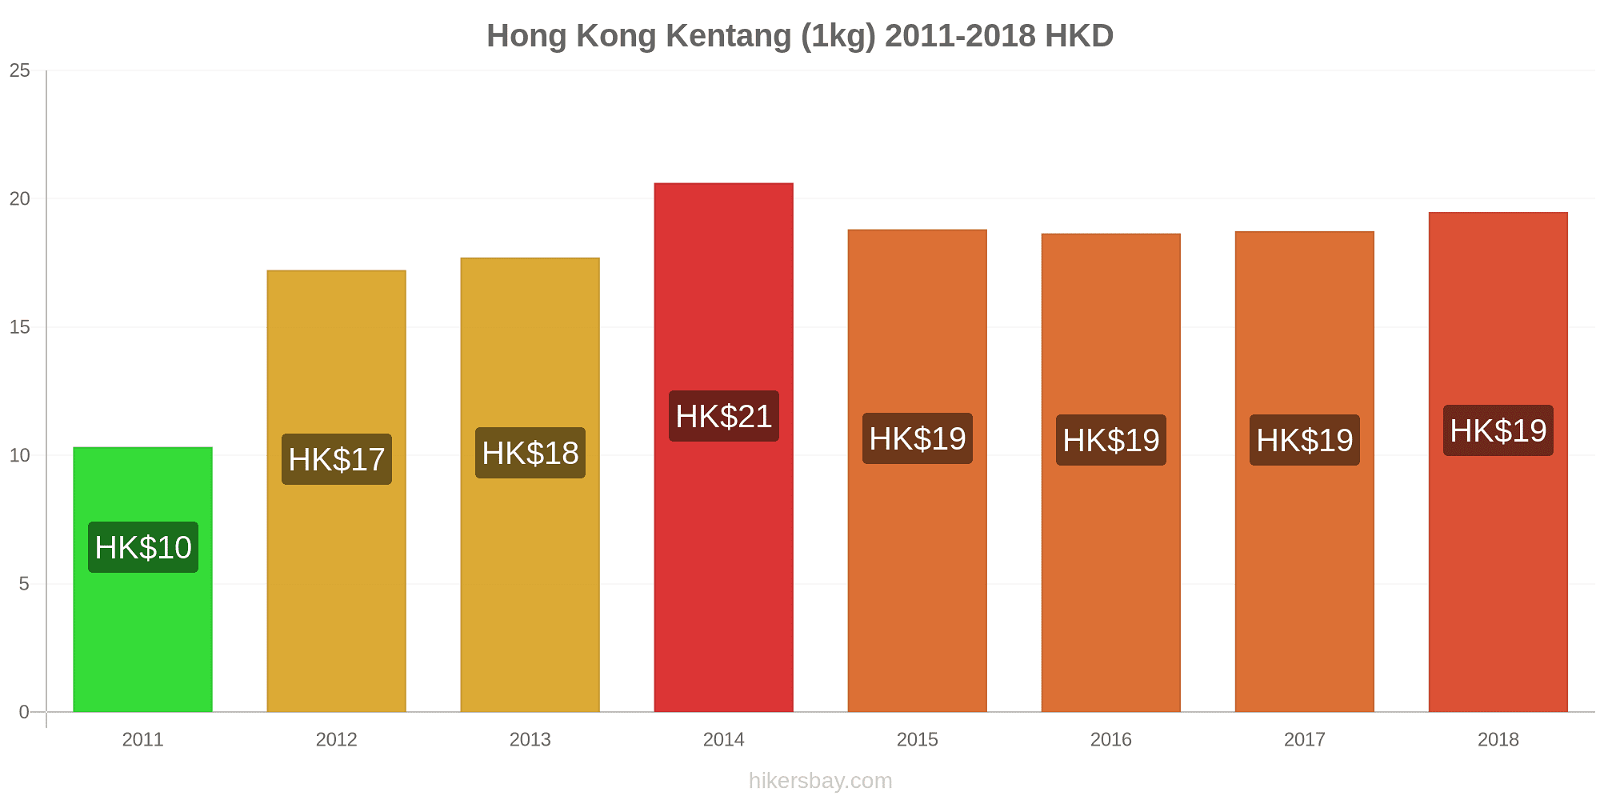 Hong Kong perubahan harga Kentang (1kg) hikersbay.com